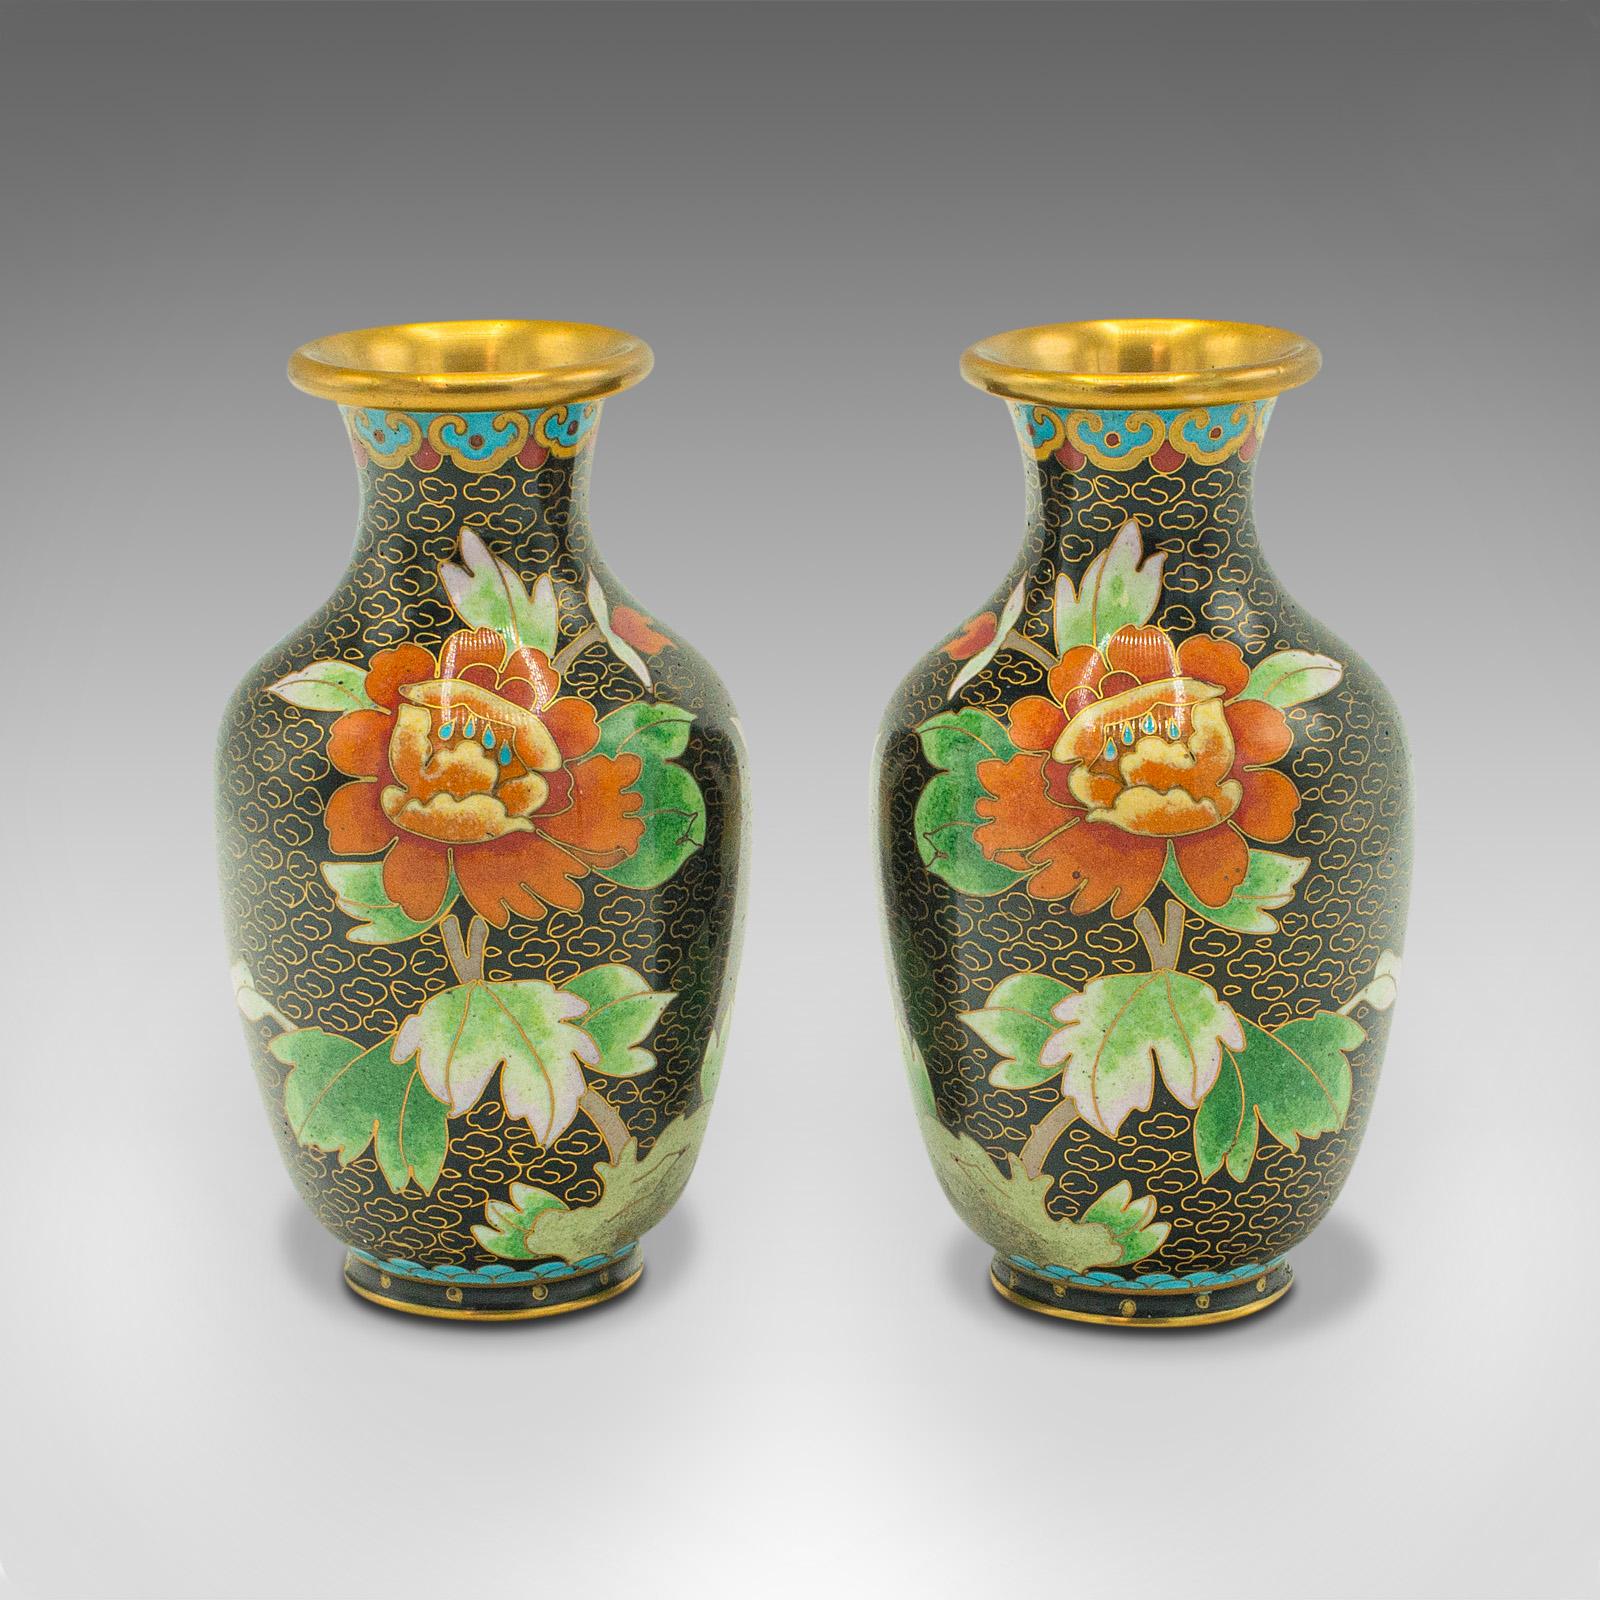 Il s'agit d'une paire de petits vases posy vintage en cloisonné. Une urne à fleurs japonaise en céramique, datant de la fin de la période Art déco, vers 1950.

Délicieusement petit, avec une finition attrayante.
Affiche une patine vieillie